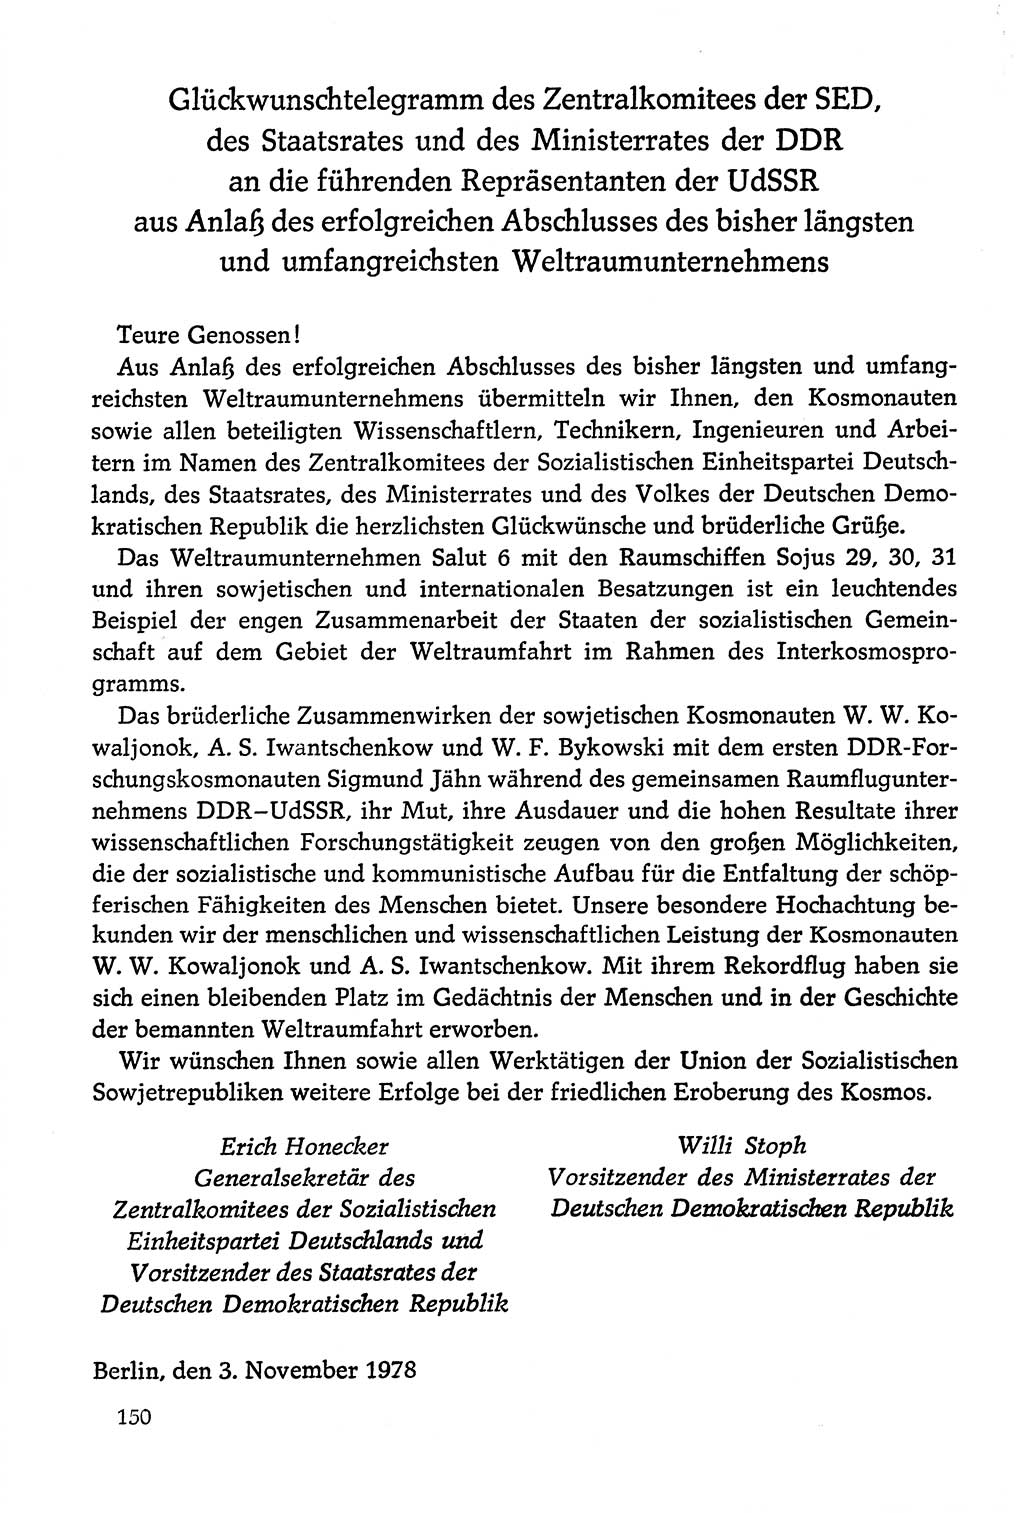 Dokumente der Sozialistischen Einheitspartei Deutschlands (SED) [Deutsche Demokratische Republik (DDR)] 1978-1979, Seite 150 (Dok. SED DDR 1978-1979, S. 150)